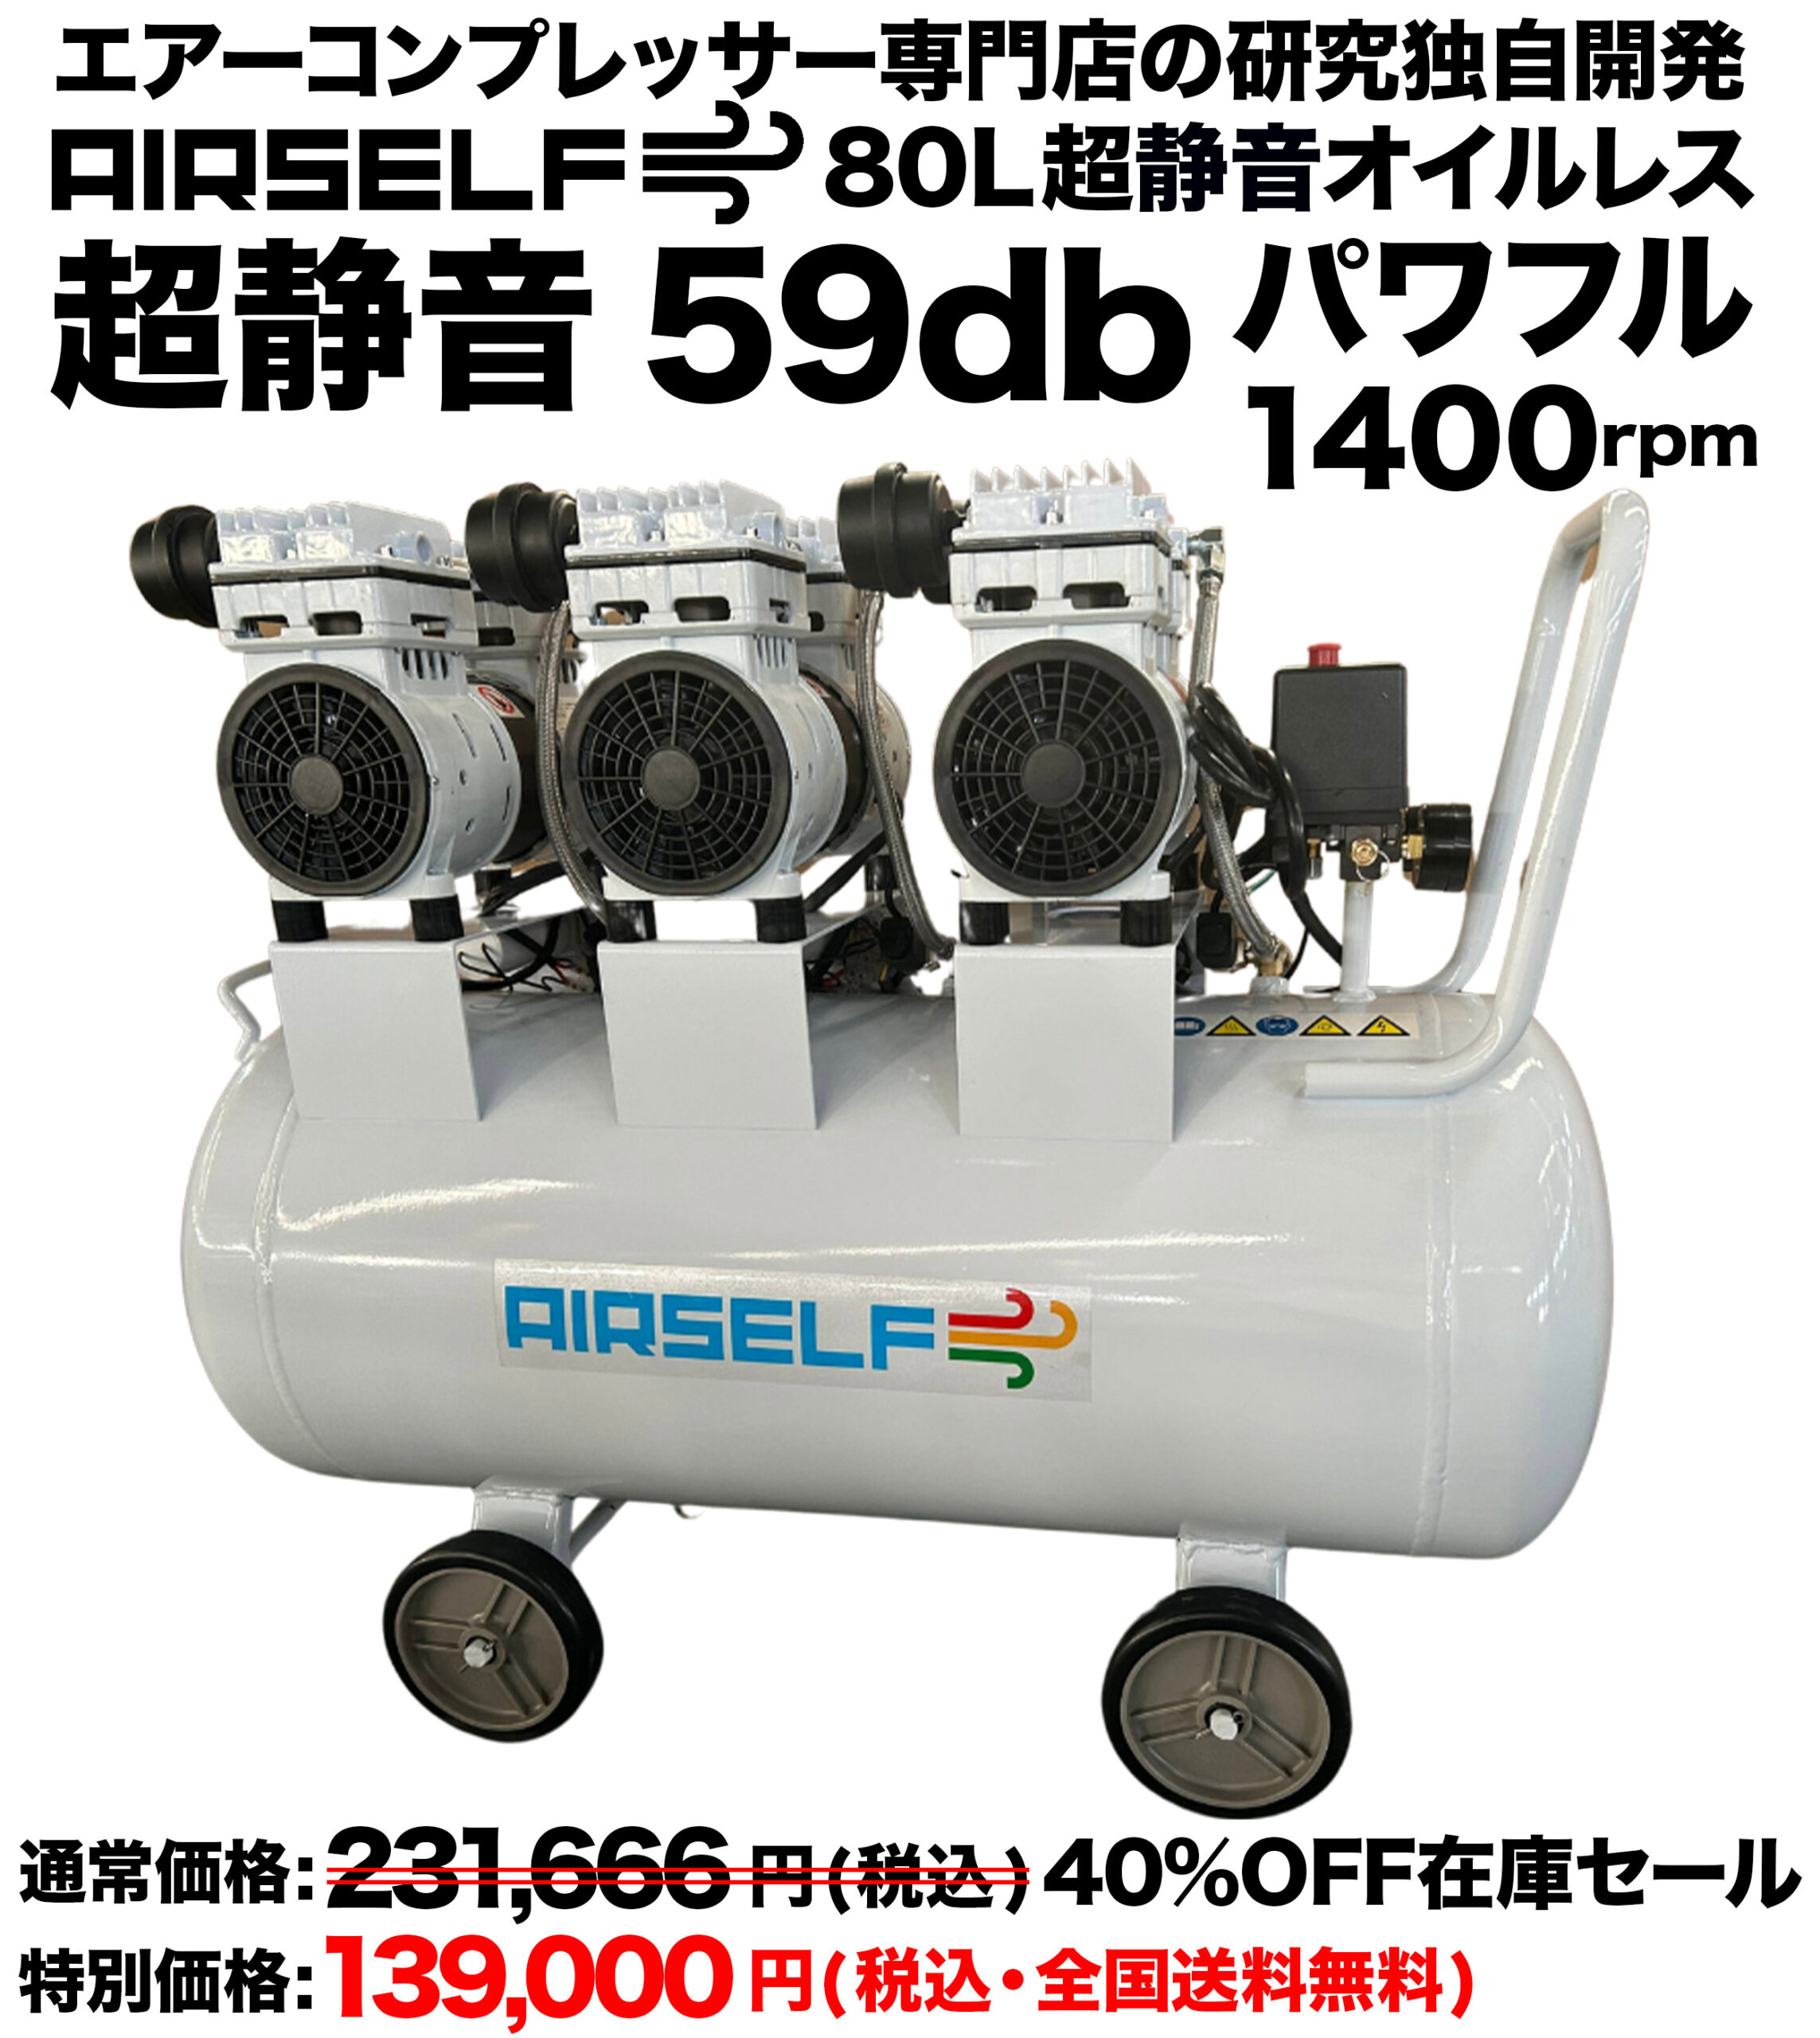 エアーコンプレッサー80L静音オイルレス型100V【AIRSELF】カラー 